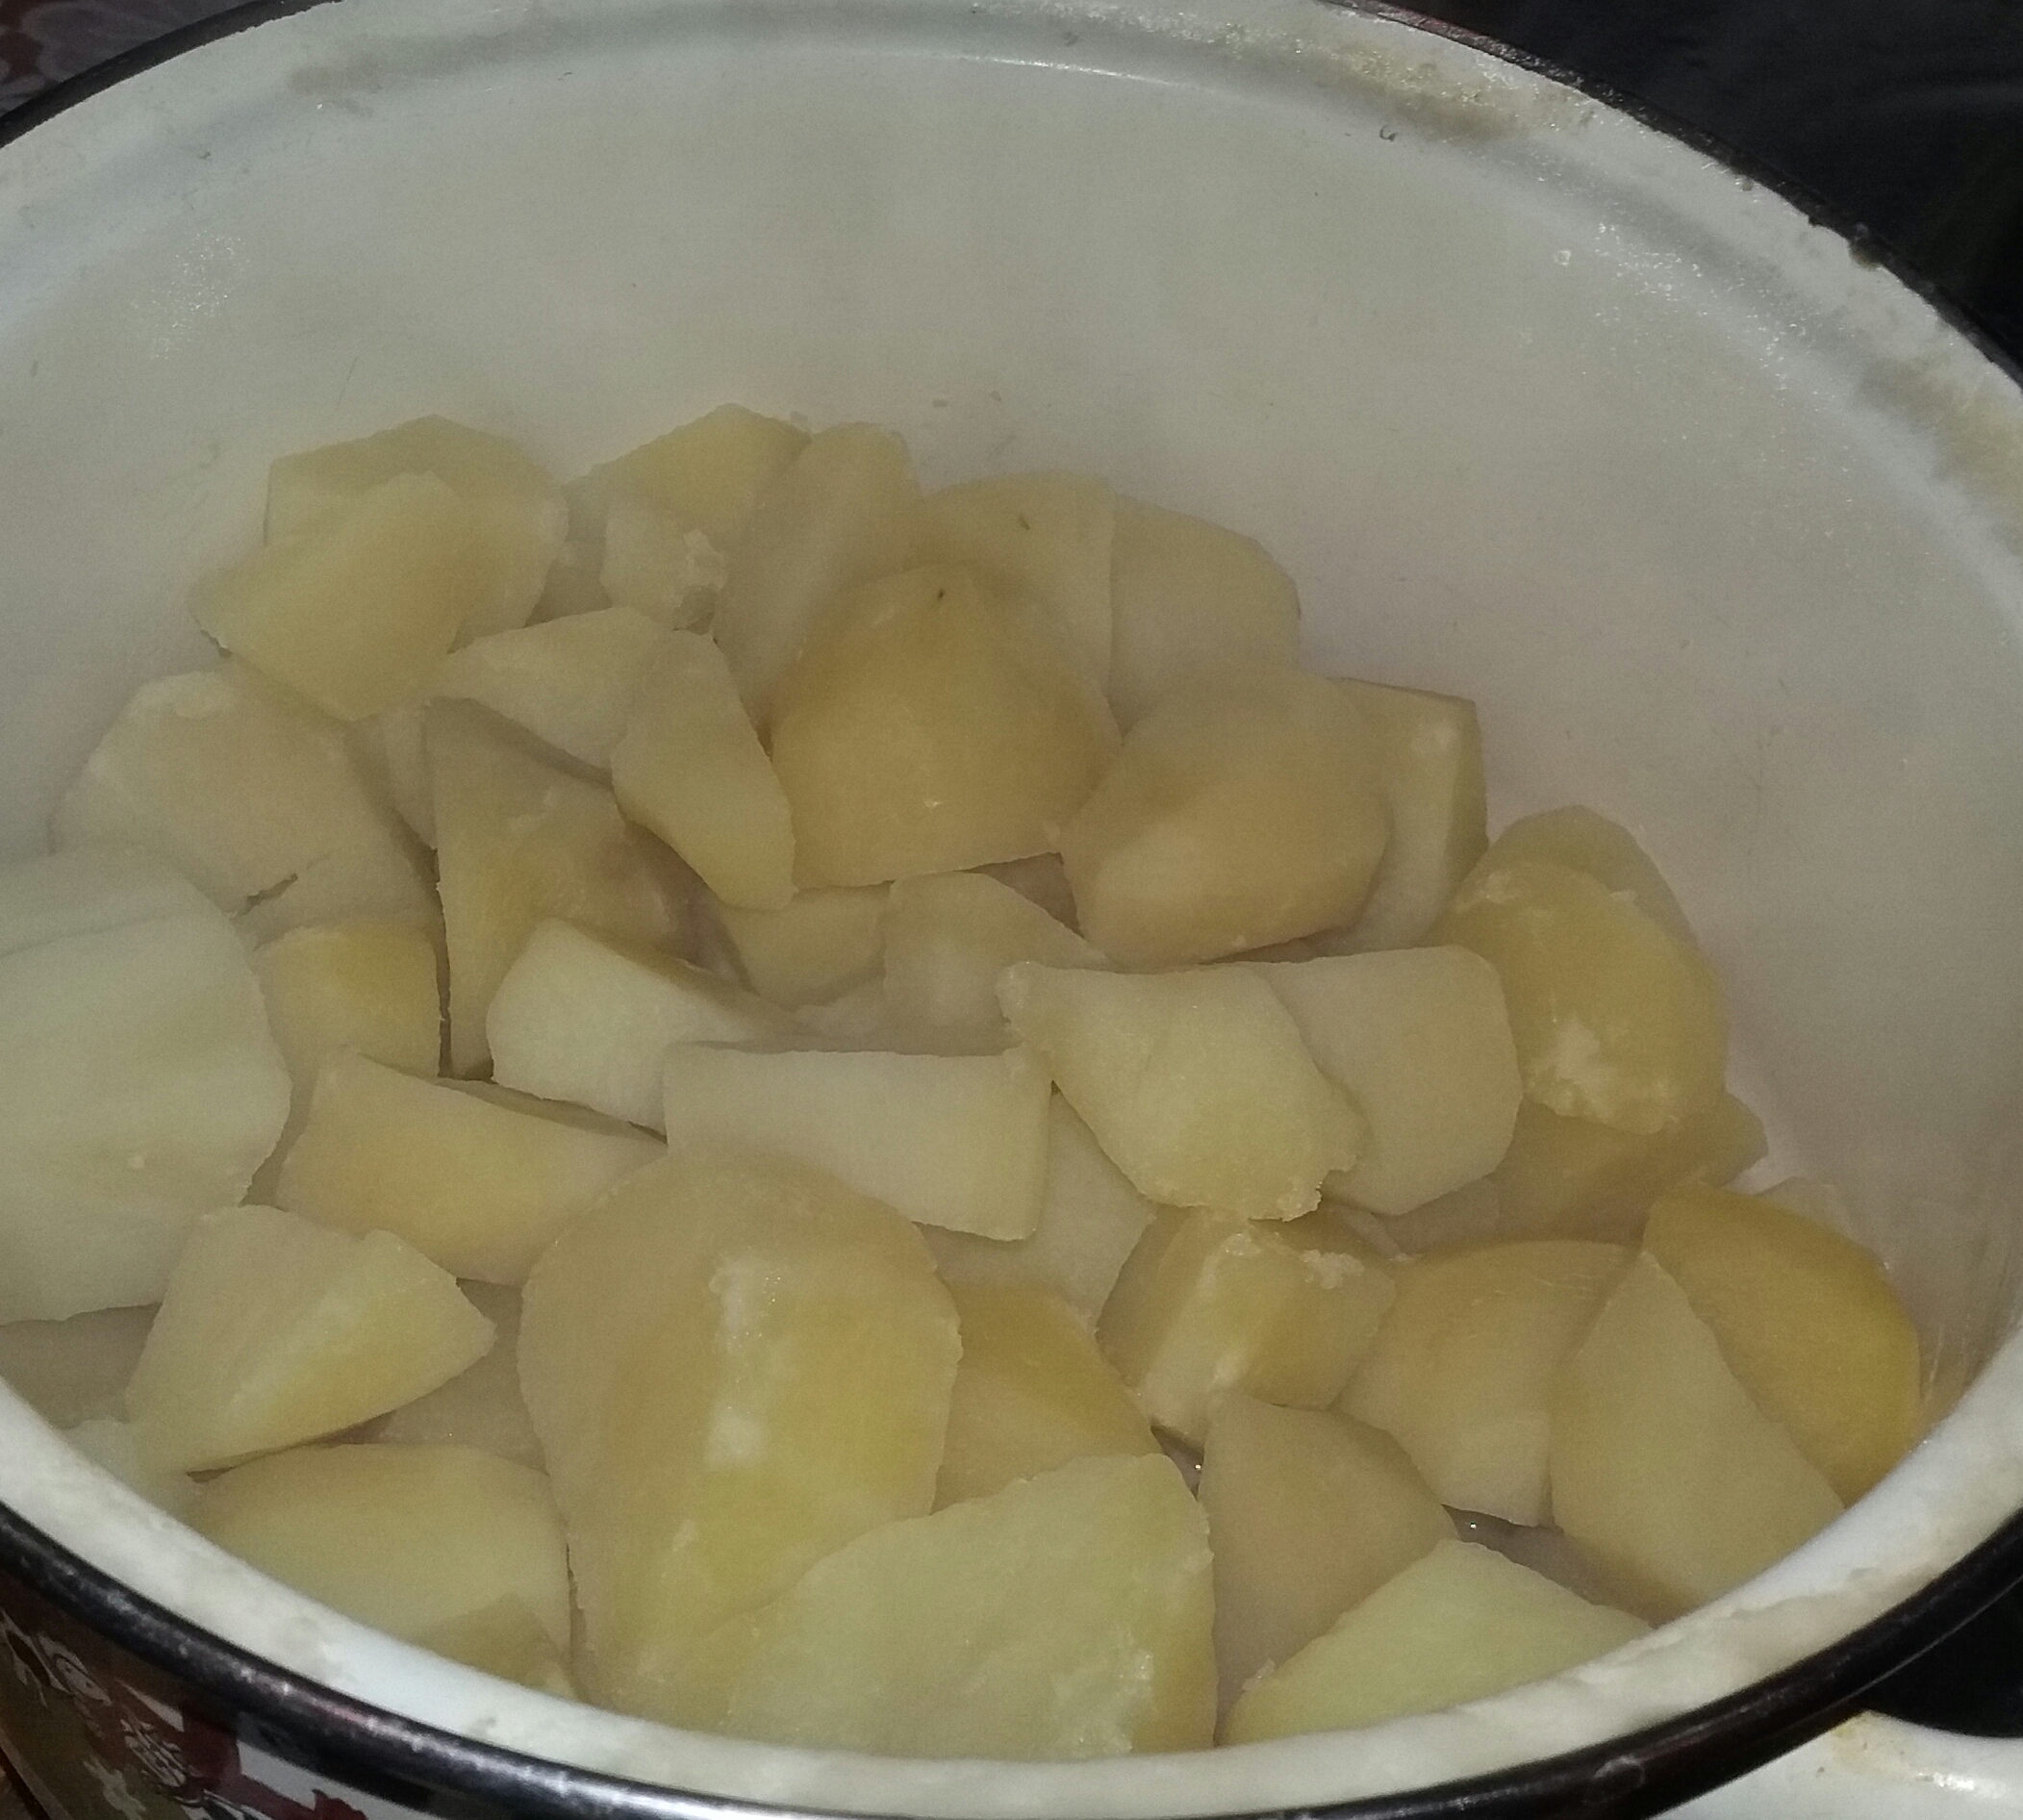 Salata de cartofi